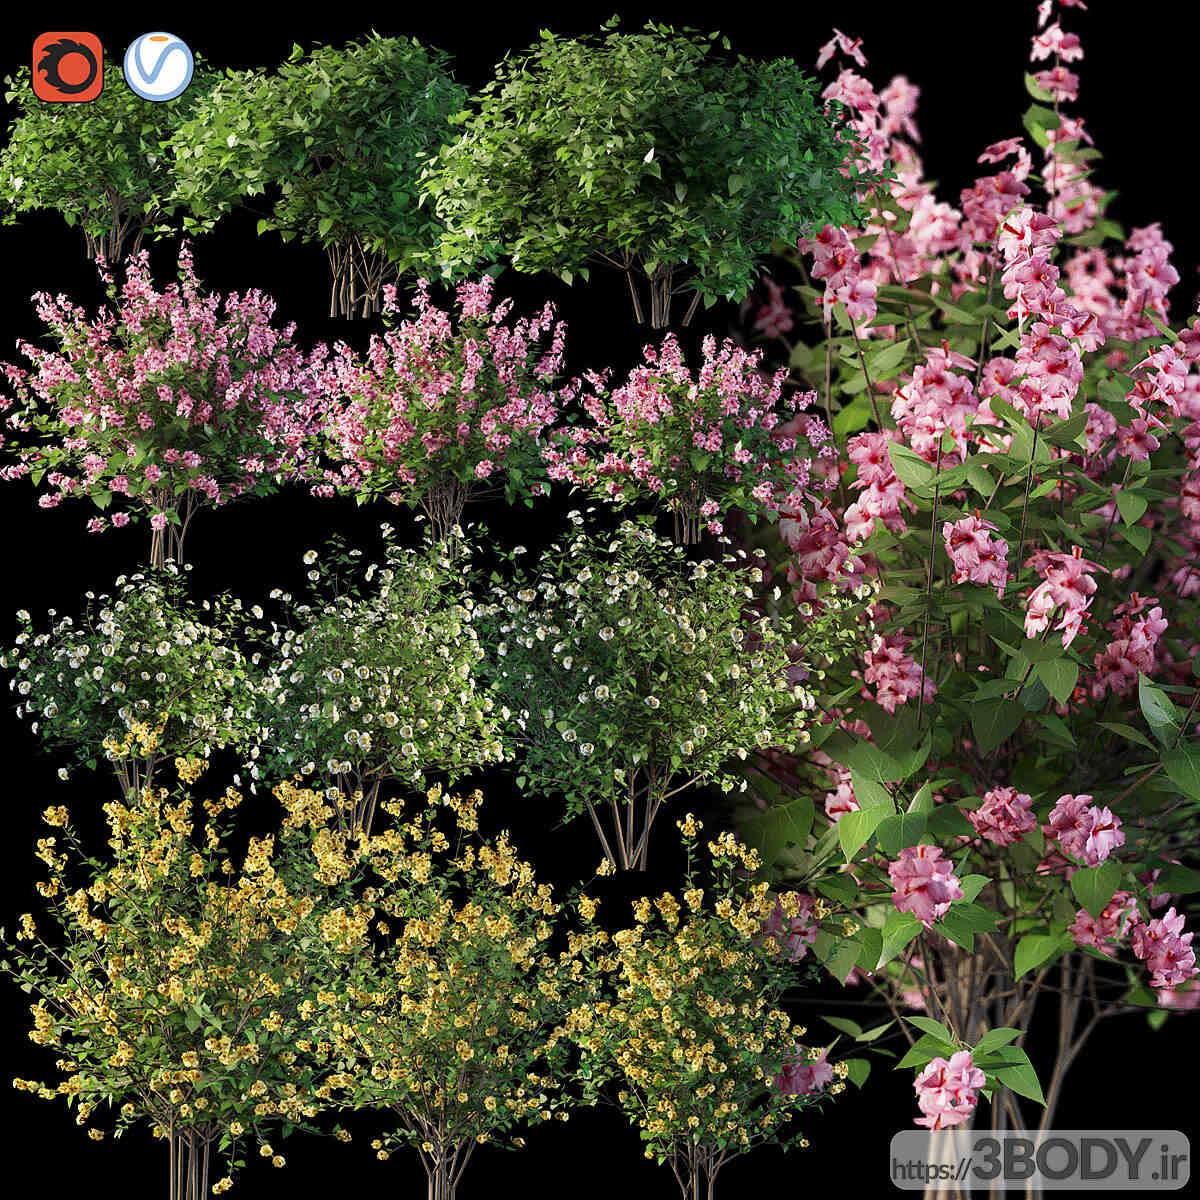 آبجکت سه  بعدی درخت و درختچه گل بوته های گلدار عکس 1